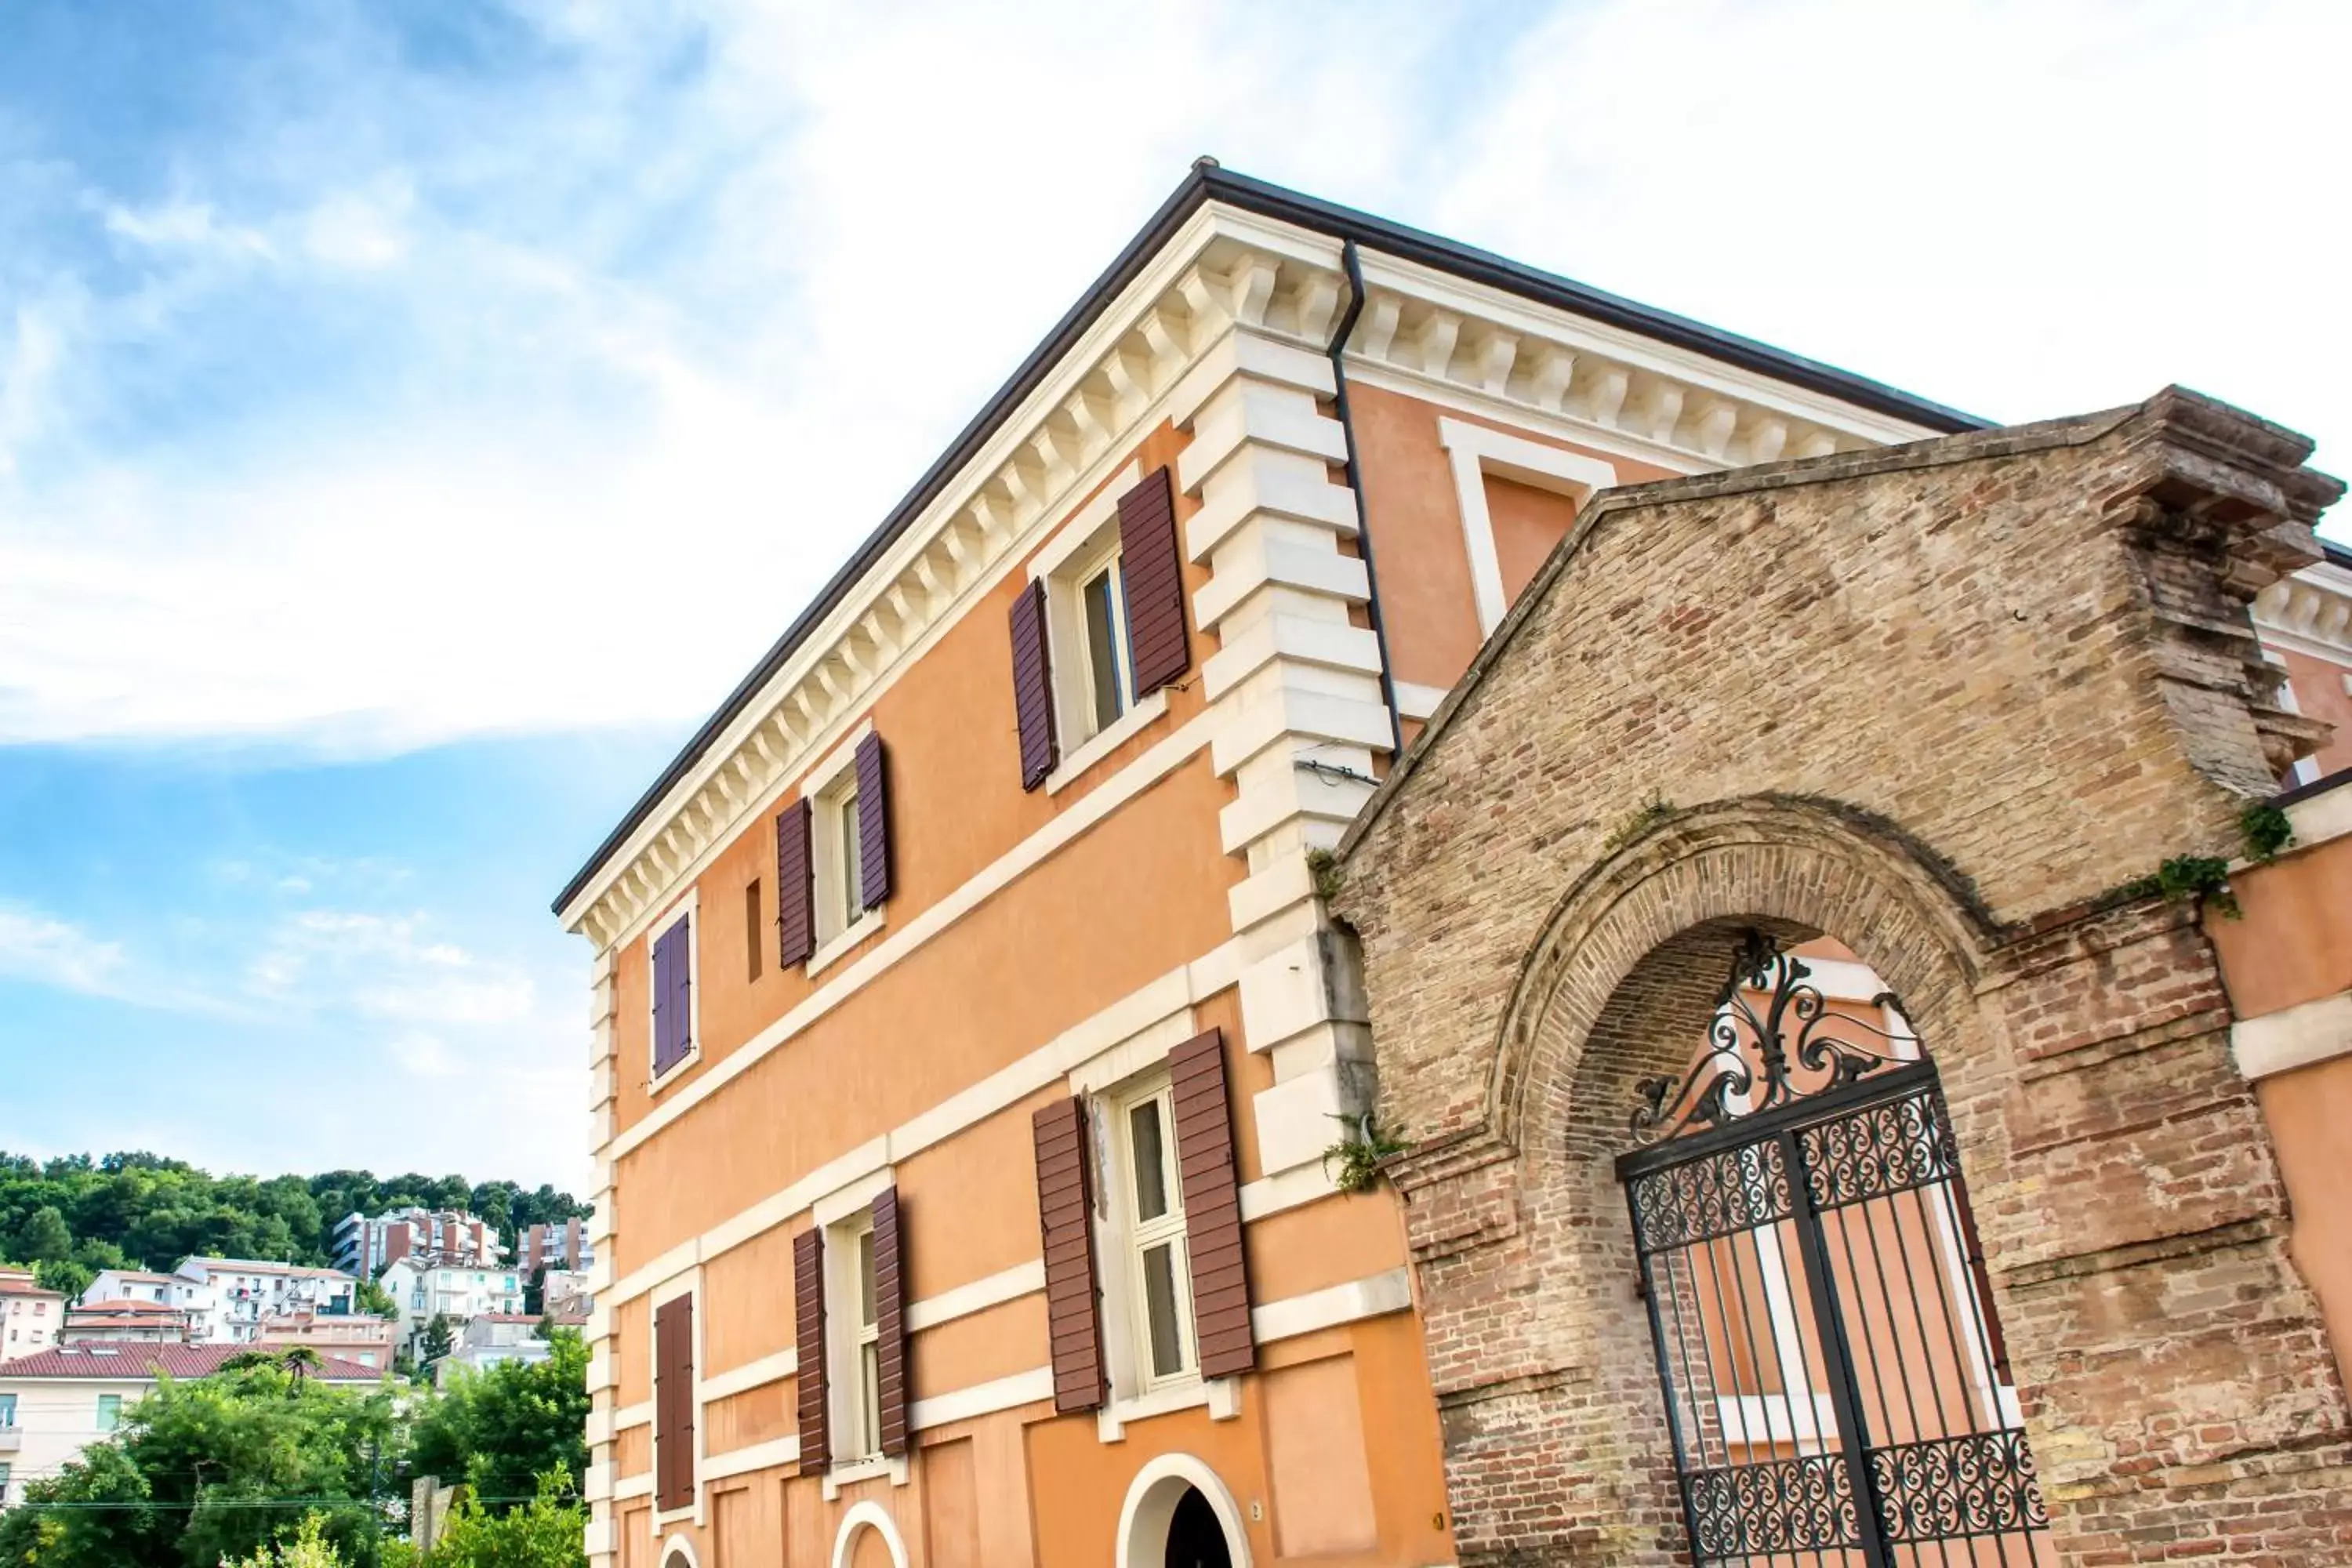 Property building, Facade/Entrance in Hotel della Vittoria